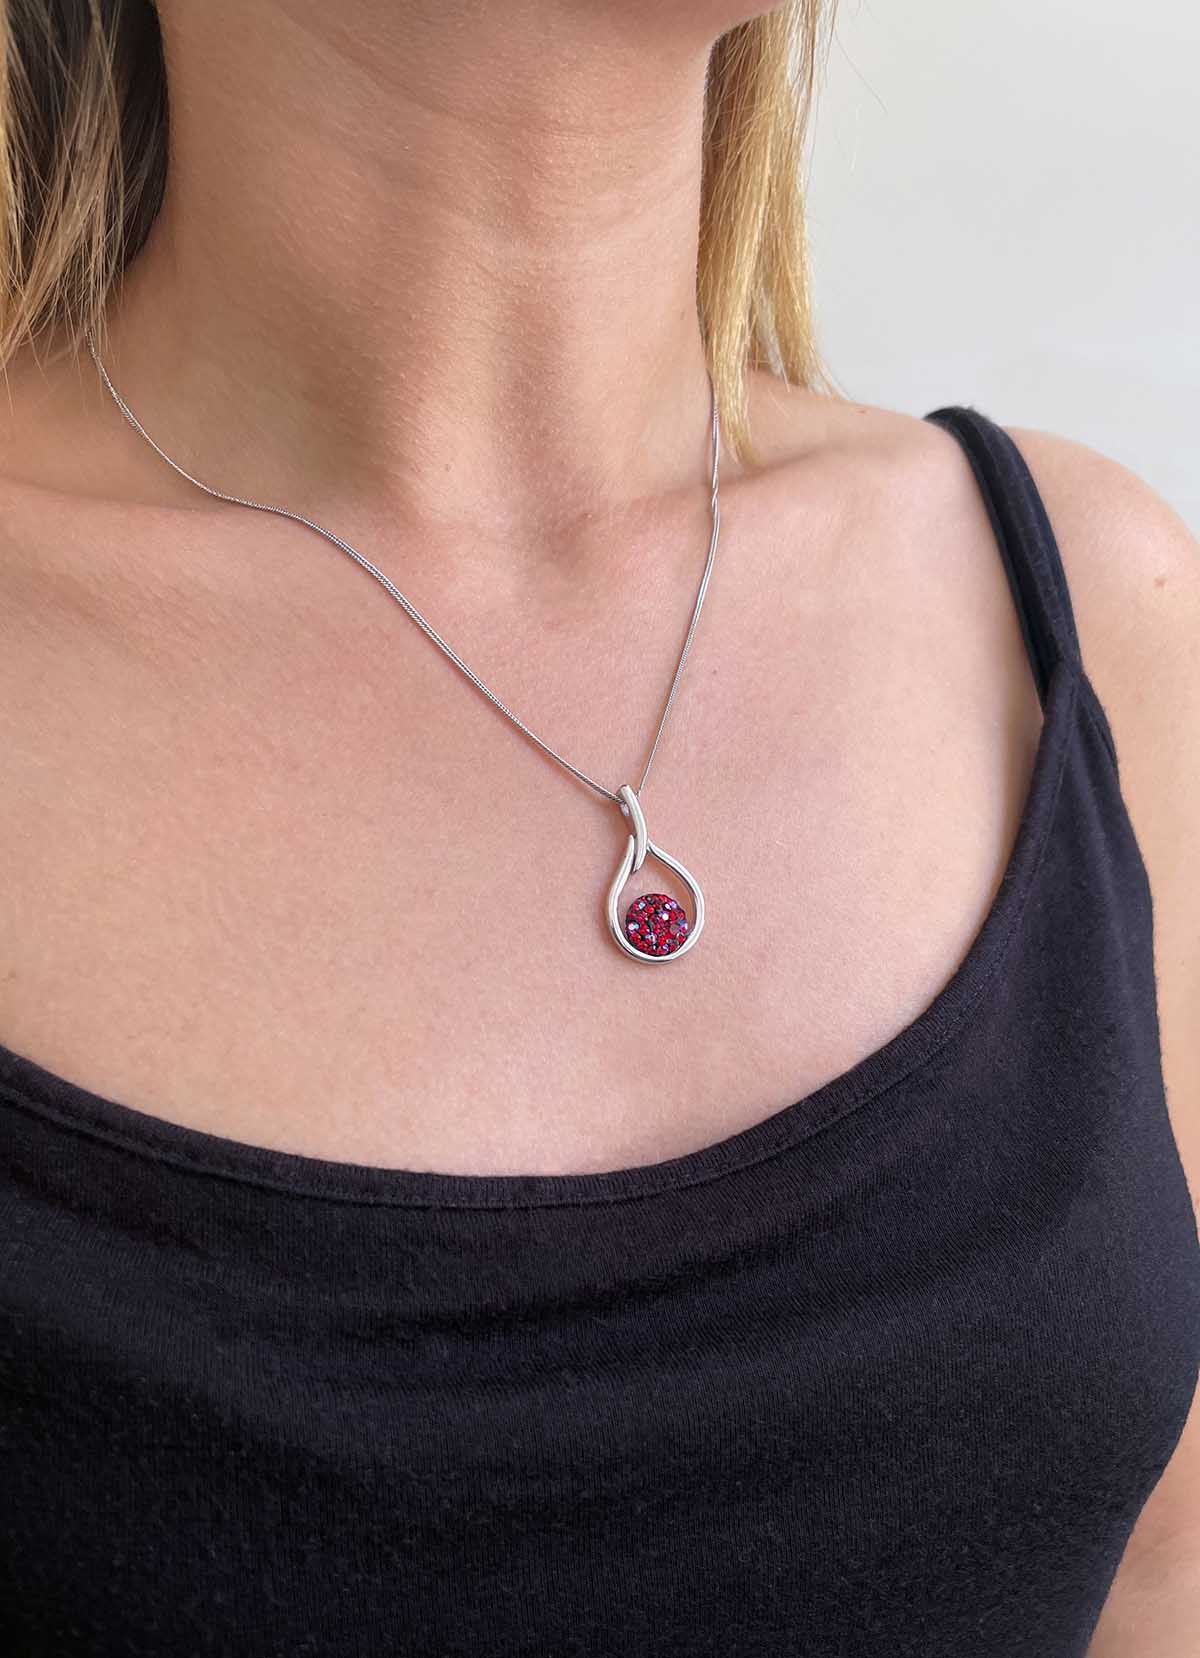 Strieborný náhrdelník so Swarovski kryštálmi kvapka 32075.3 cherry